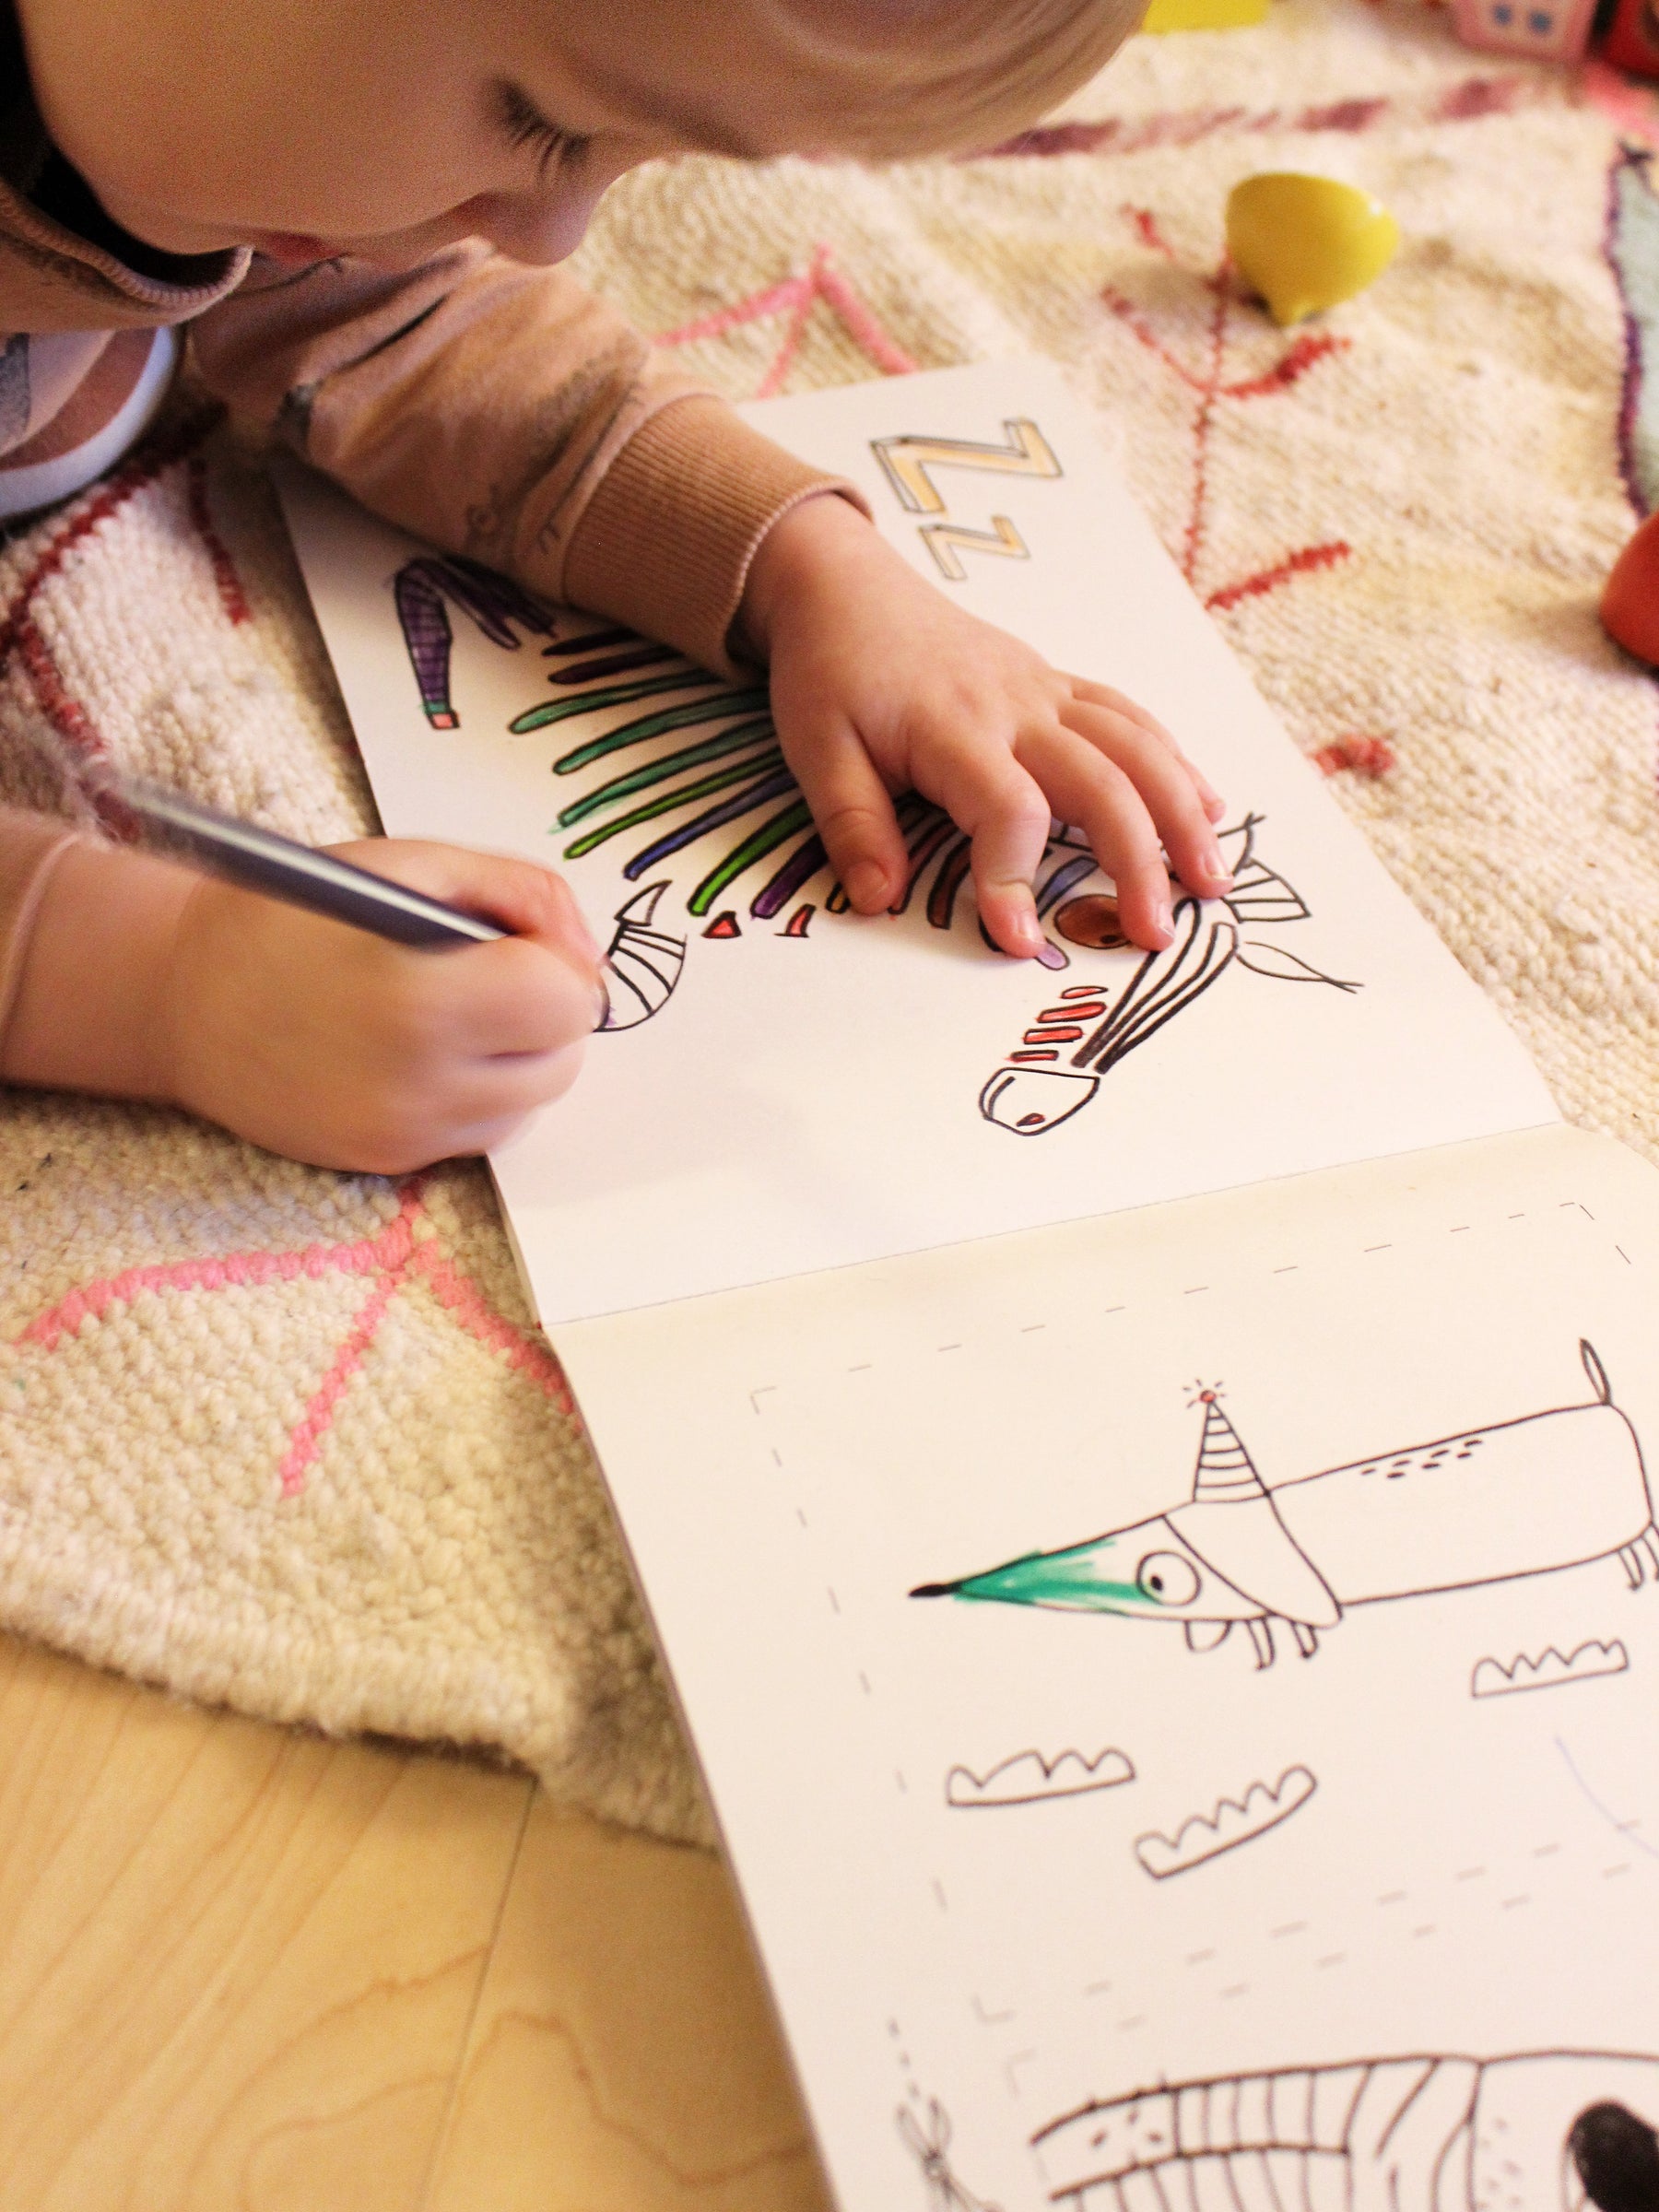 Kind malt im ABC Malbuch von halfbird das Zebra bunt aus